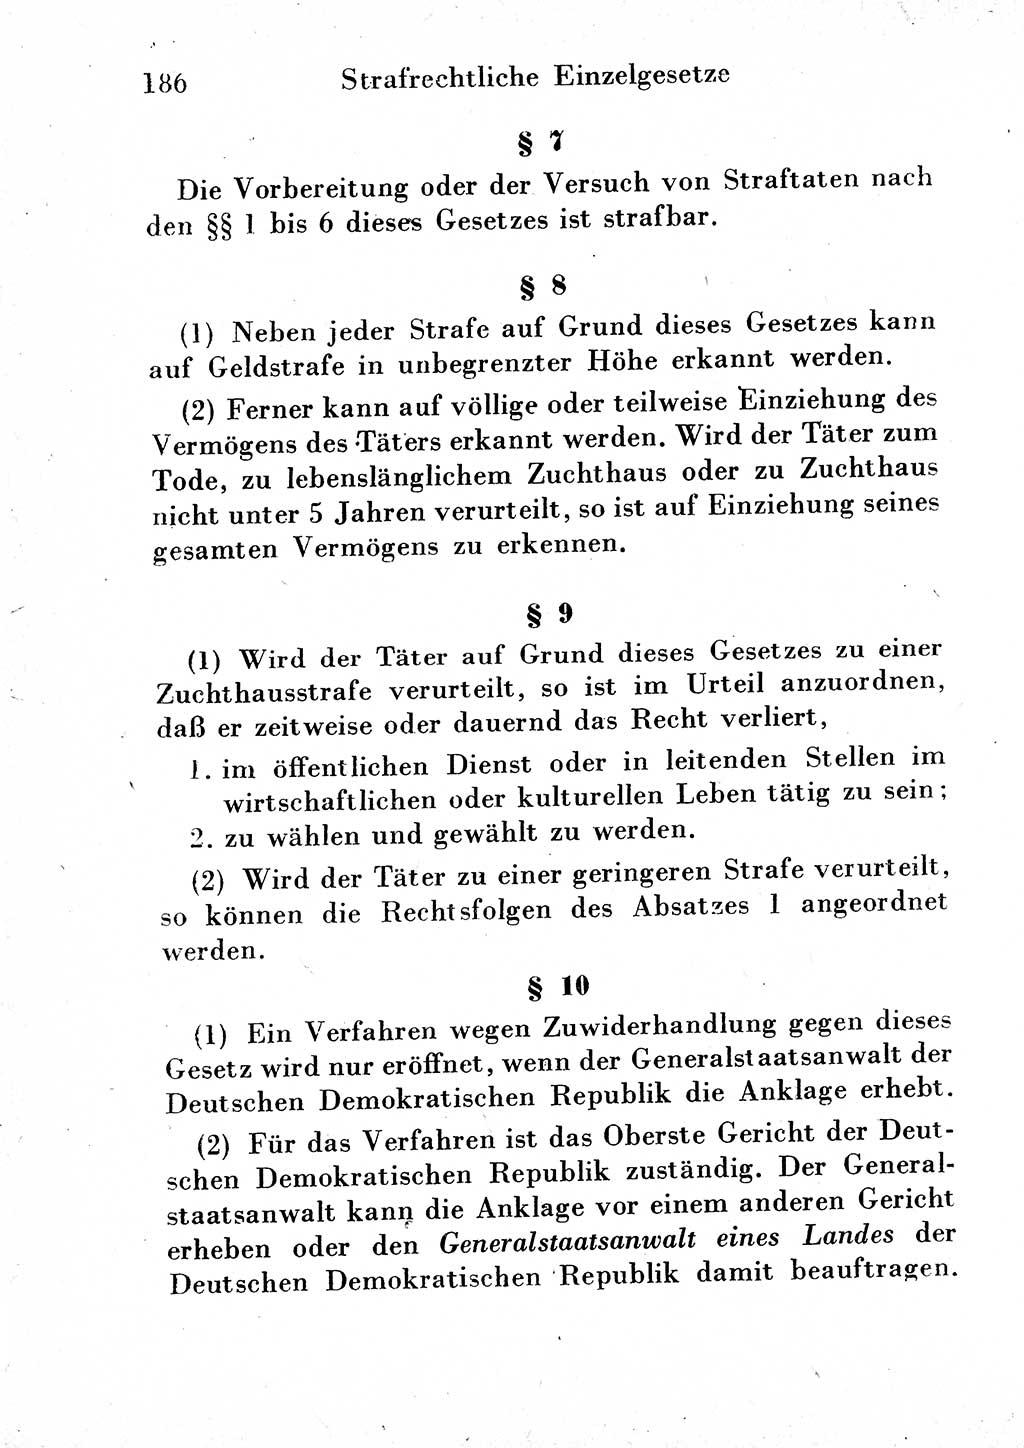 Strafgesetzbuch (StGB) und andere Strafgesetze [Deutsche Demokratische Republik (DDR)] 1954, Seite 186 (StGB Strafges. DDR 1954, S. 186)